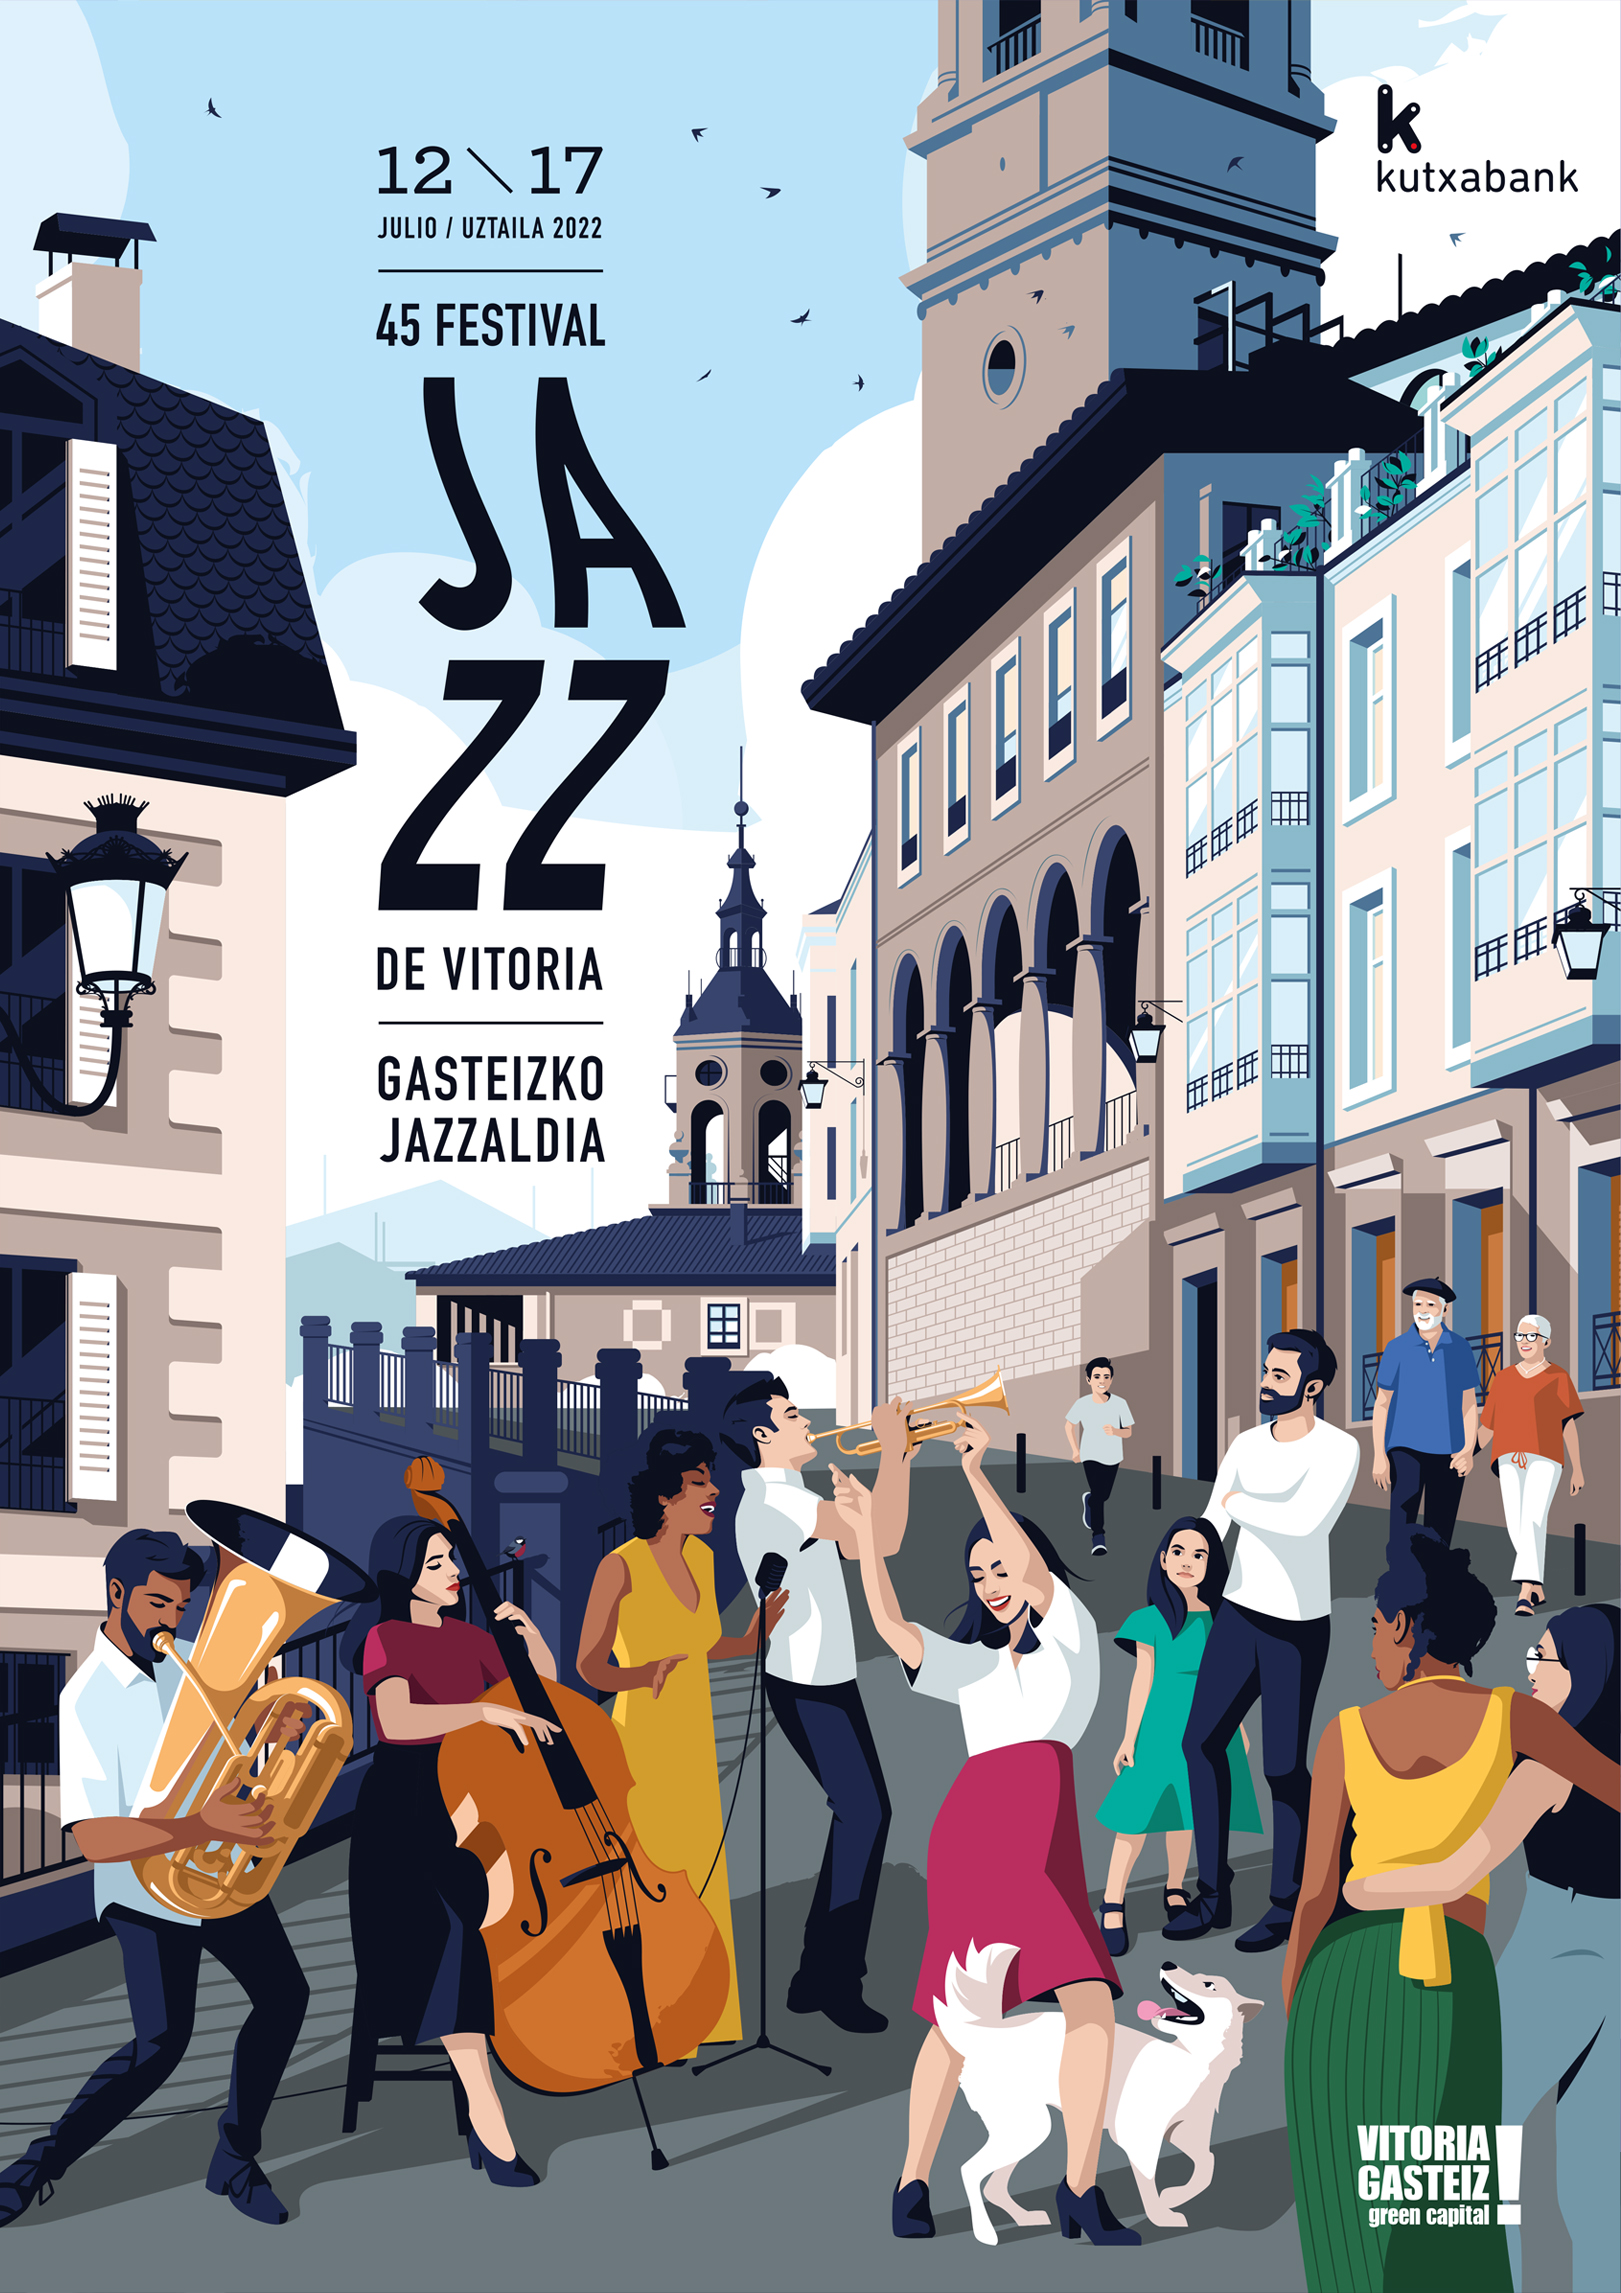 Imagen para el Festival de Jazz de Vitoria-Gasteiz 2022